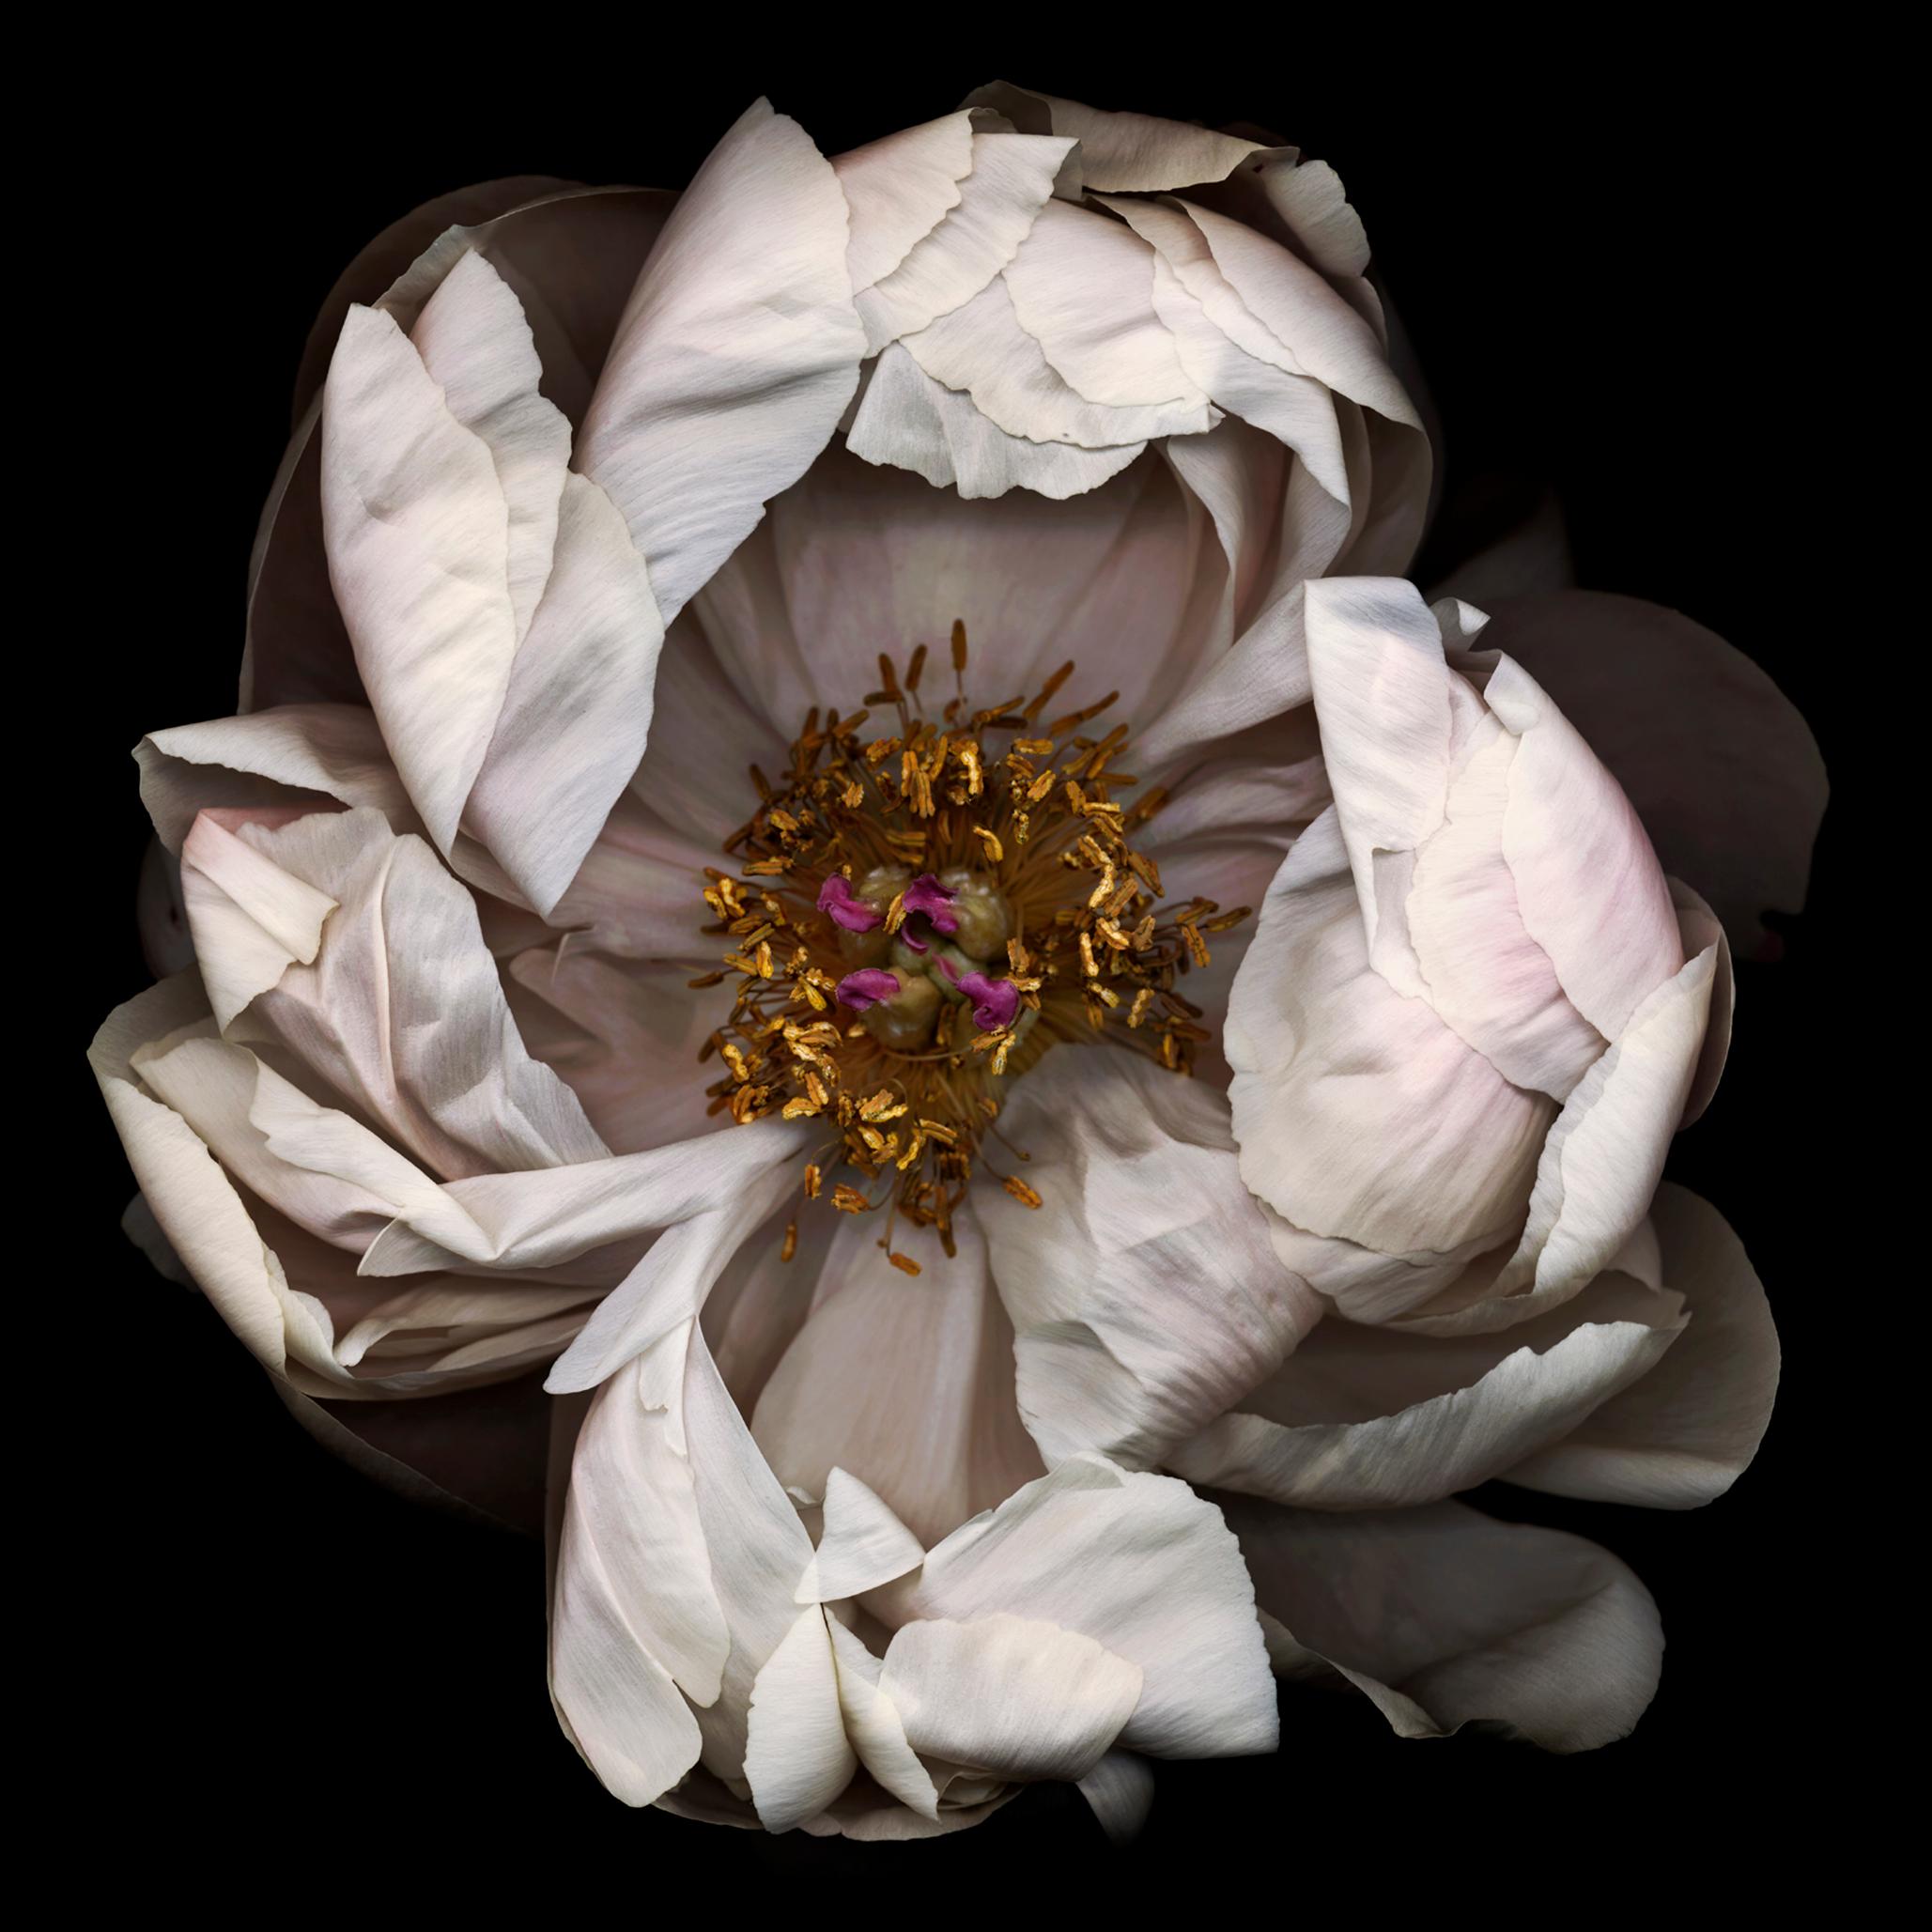 Chad Kleitsch Still-Life Photograph – Nr. 13 (gerahmte Stilllebenfotografie einer weißen Pfingstroseblume auf Schwarz) 